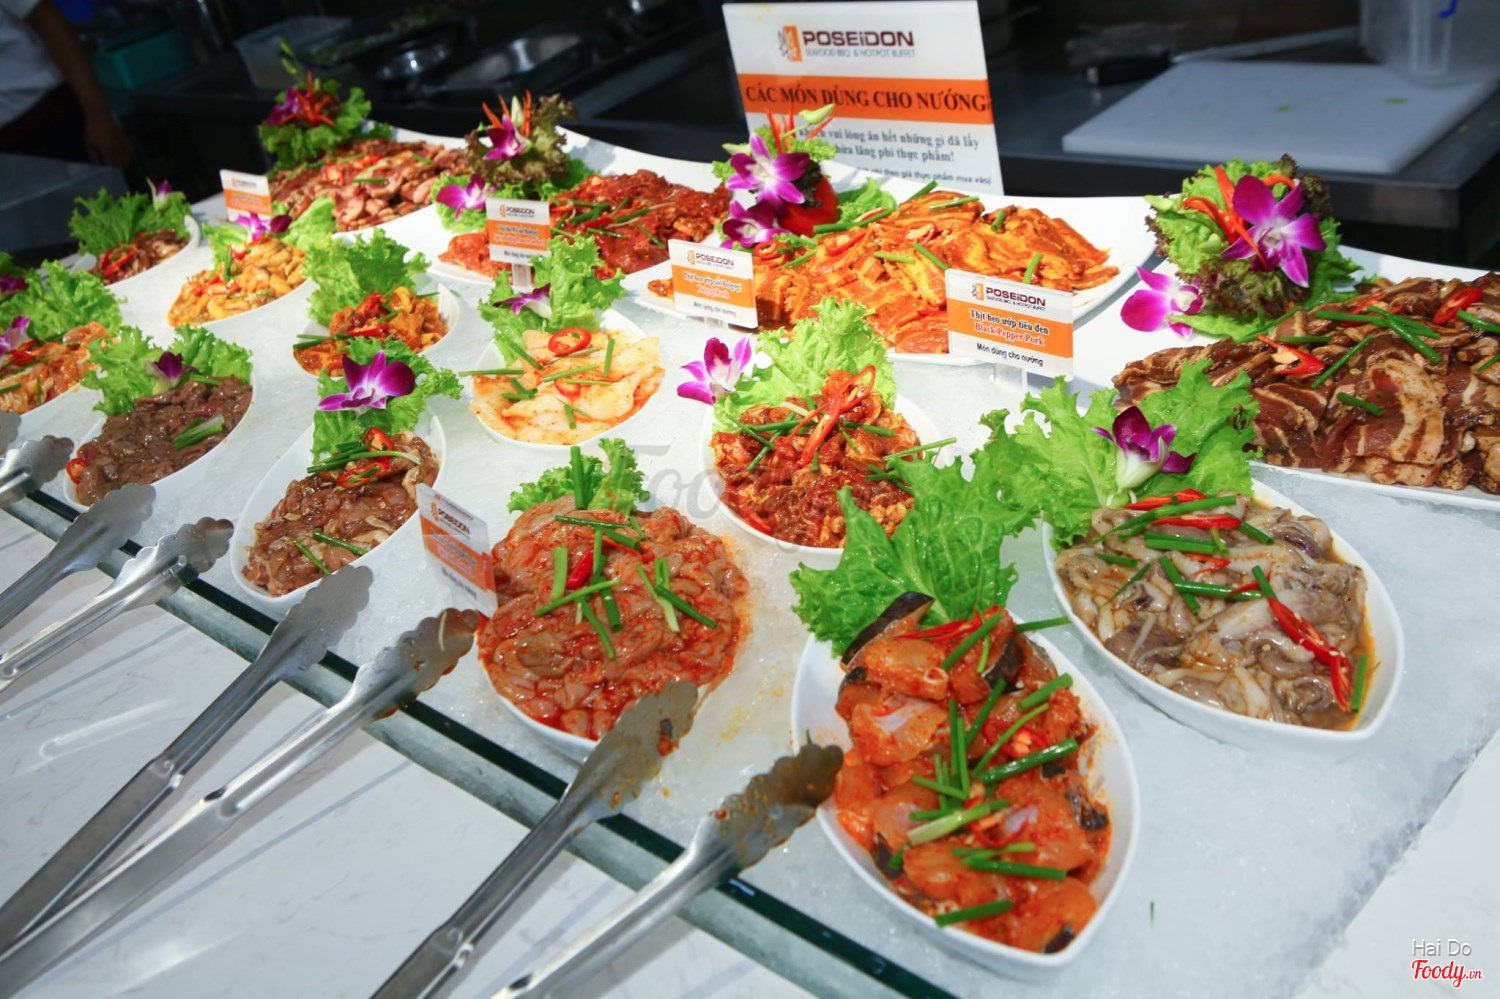 Buffet Poseidon - Seafood BBQ & Hotpot Buffet - Center Point ở Quận Thanh  Xuân, Hà Nội | Album tổng hợp | Buffet Poseidon - Seafood BBQ & Hotpot Buffe